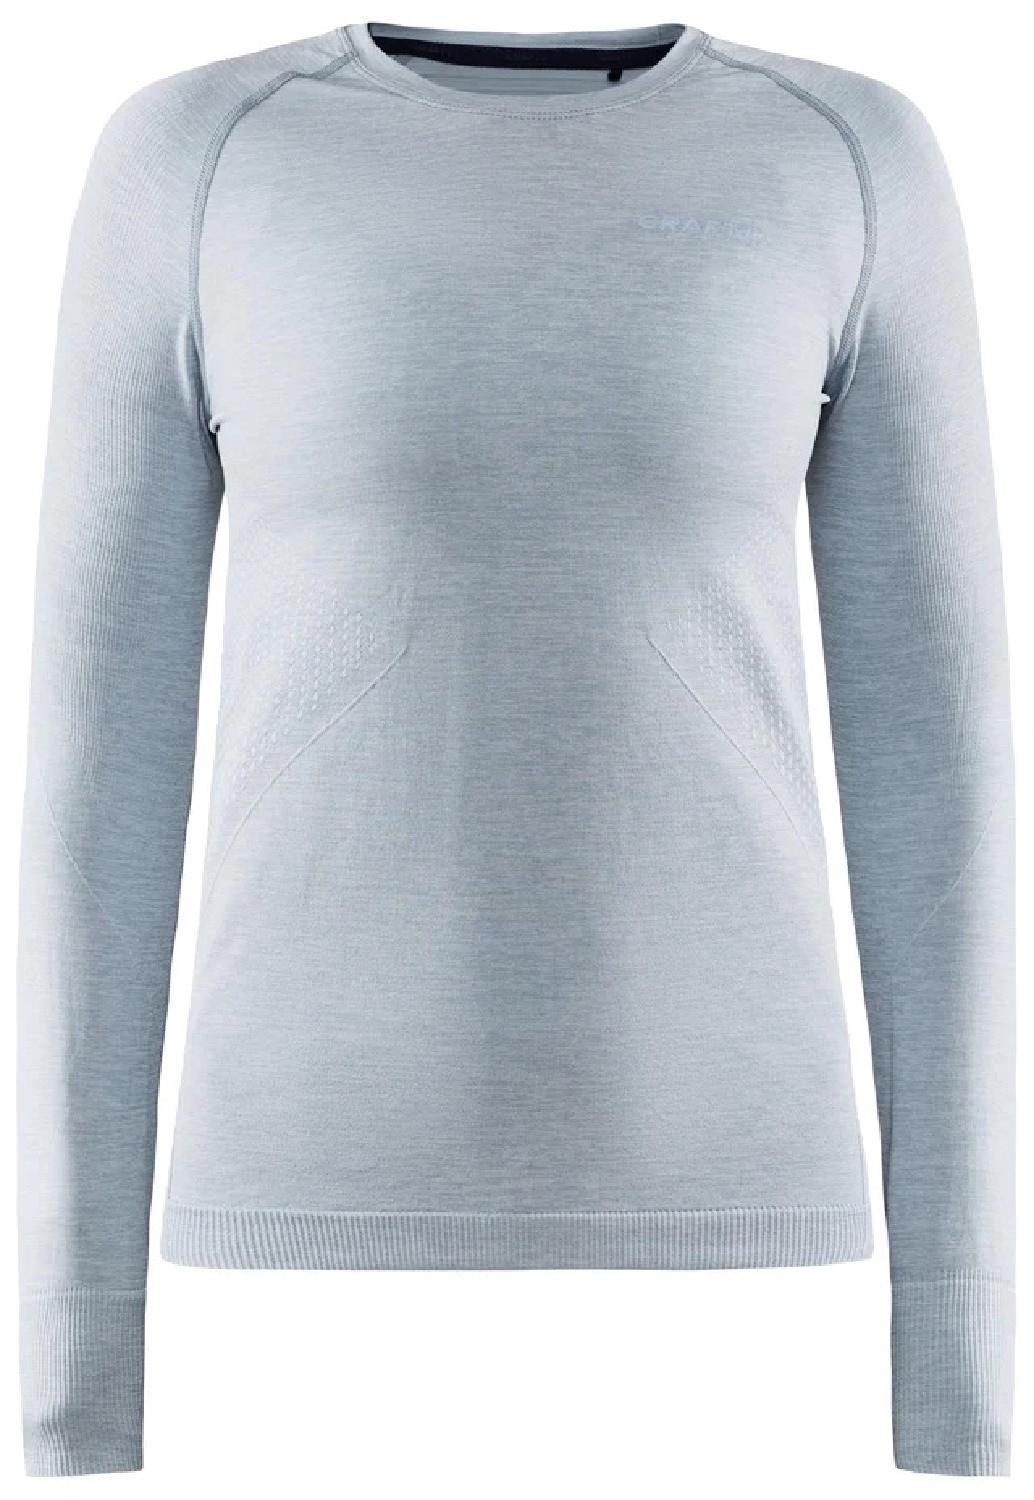 Базовый топ CORE Dry Active Comfort – женский Craft, серый